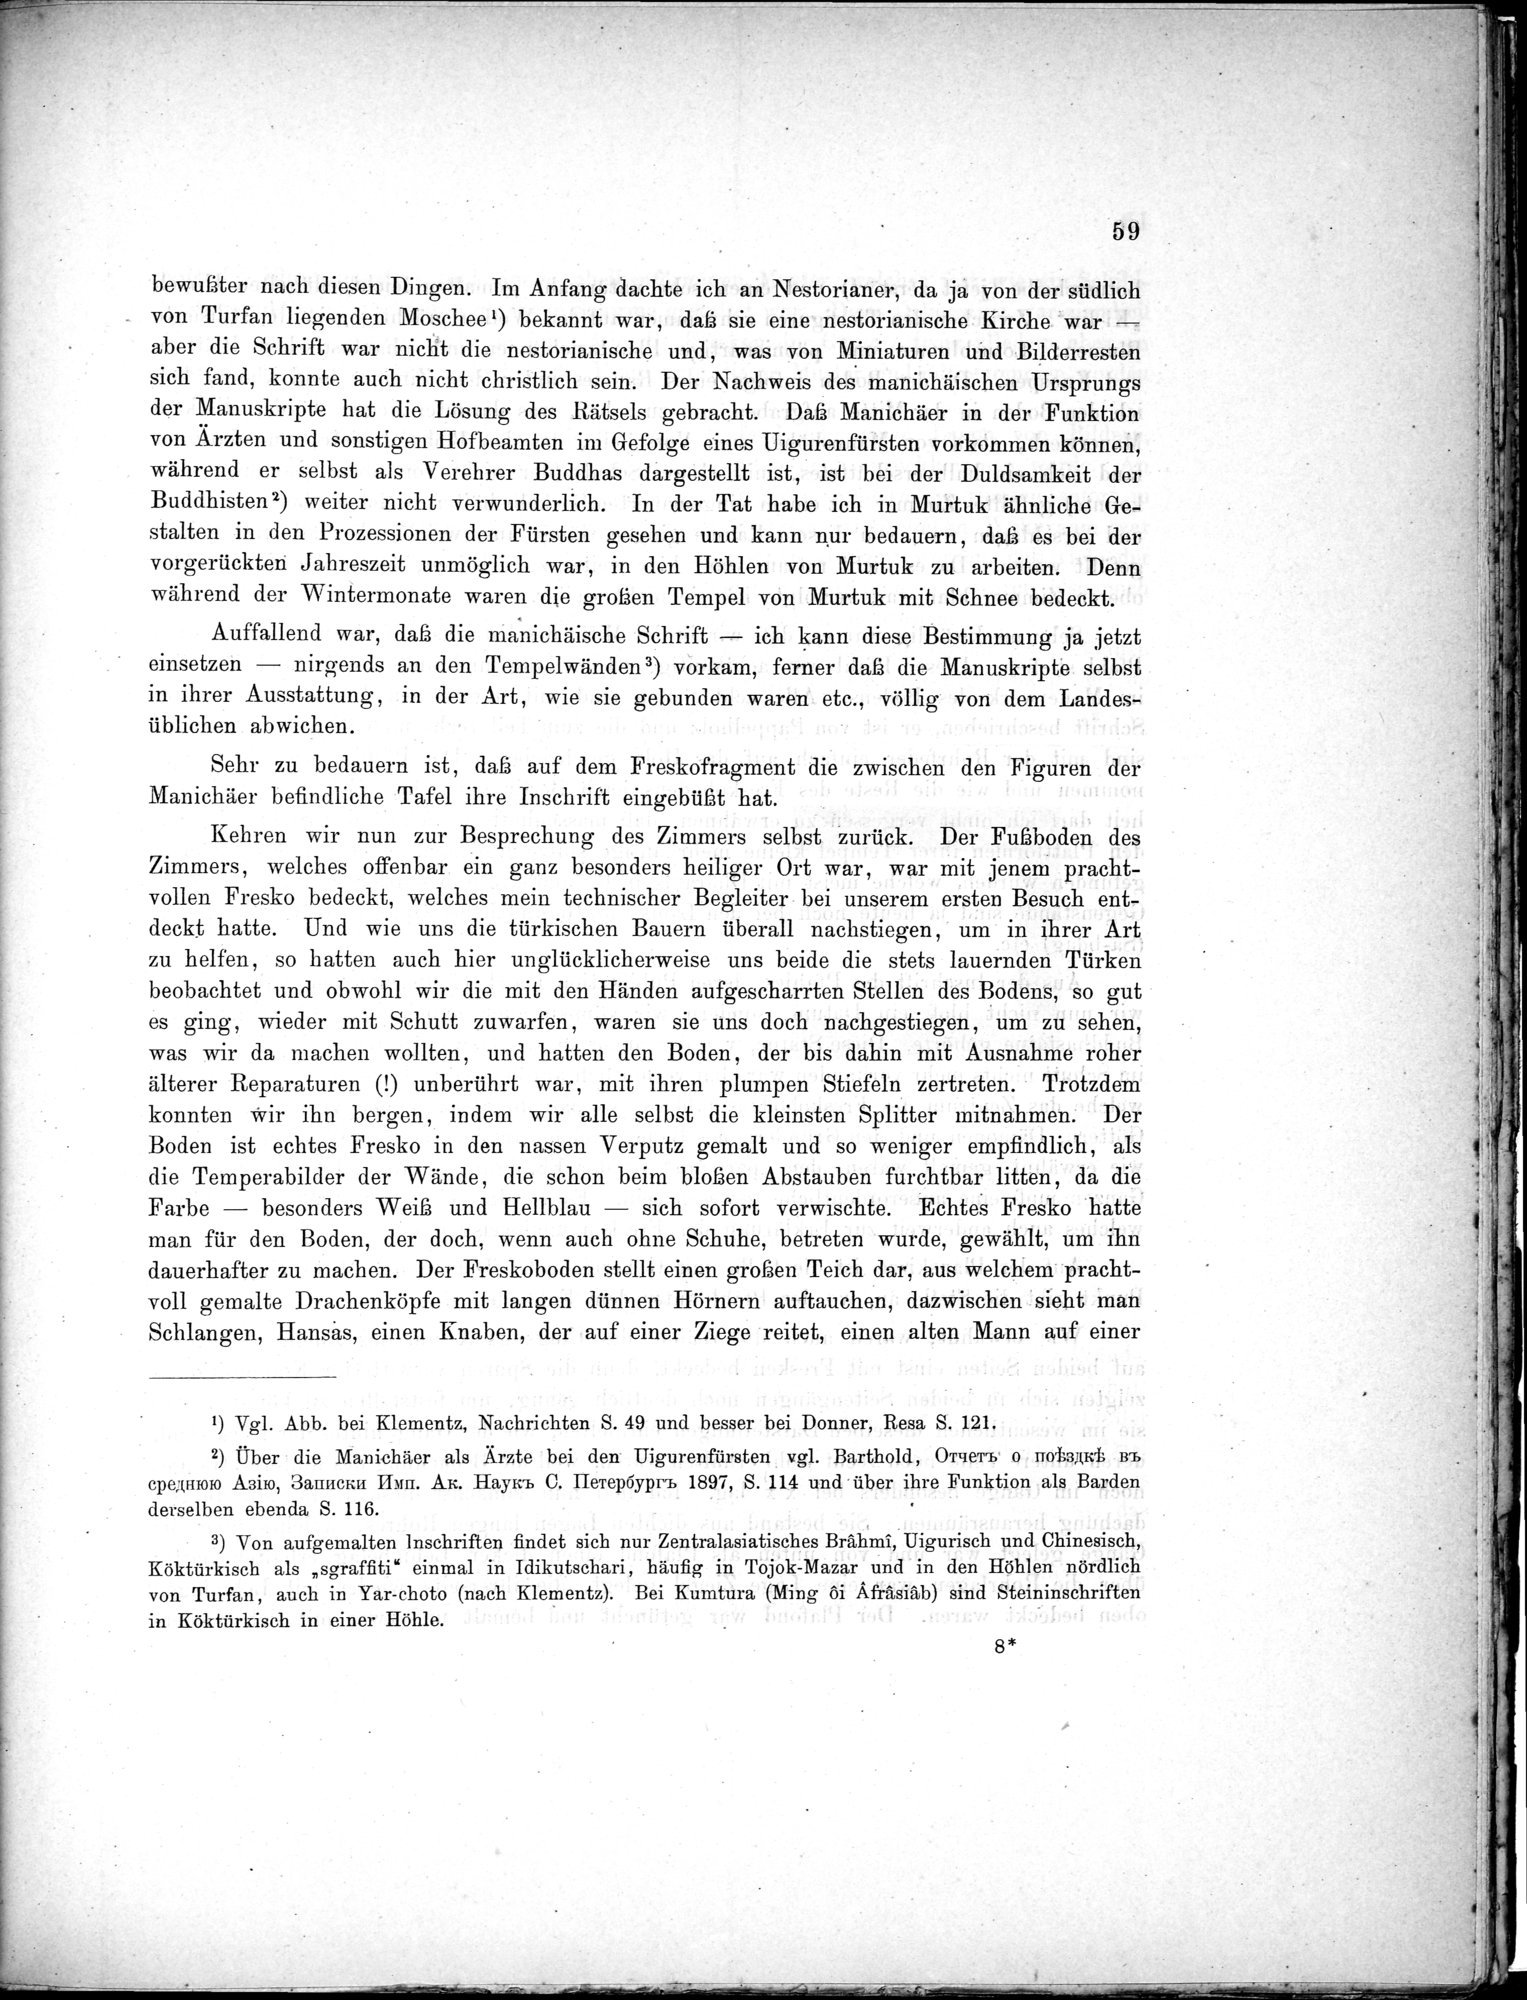 Bericht über archäologische Arbeiten in Idikutschari und Umgebung im Winter 1902-1903 : vol.1 / Page 69 (Grayscale High Resolution Image)